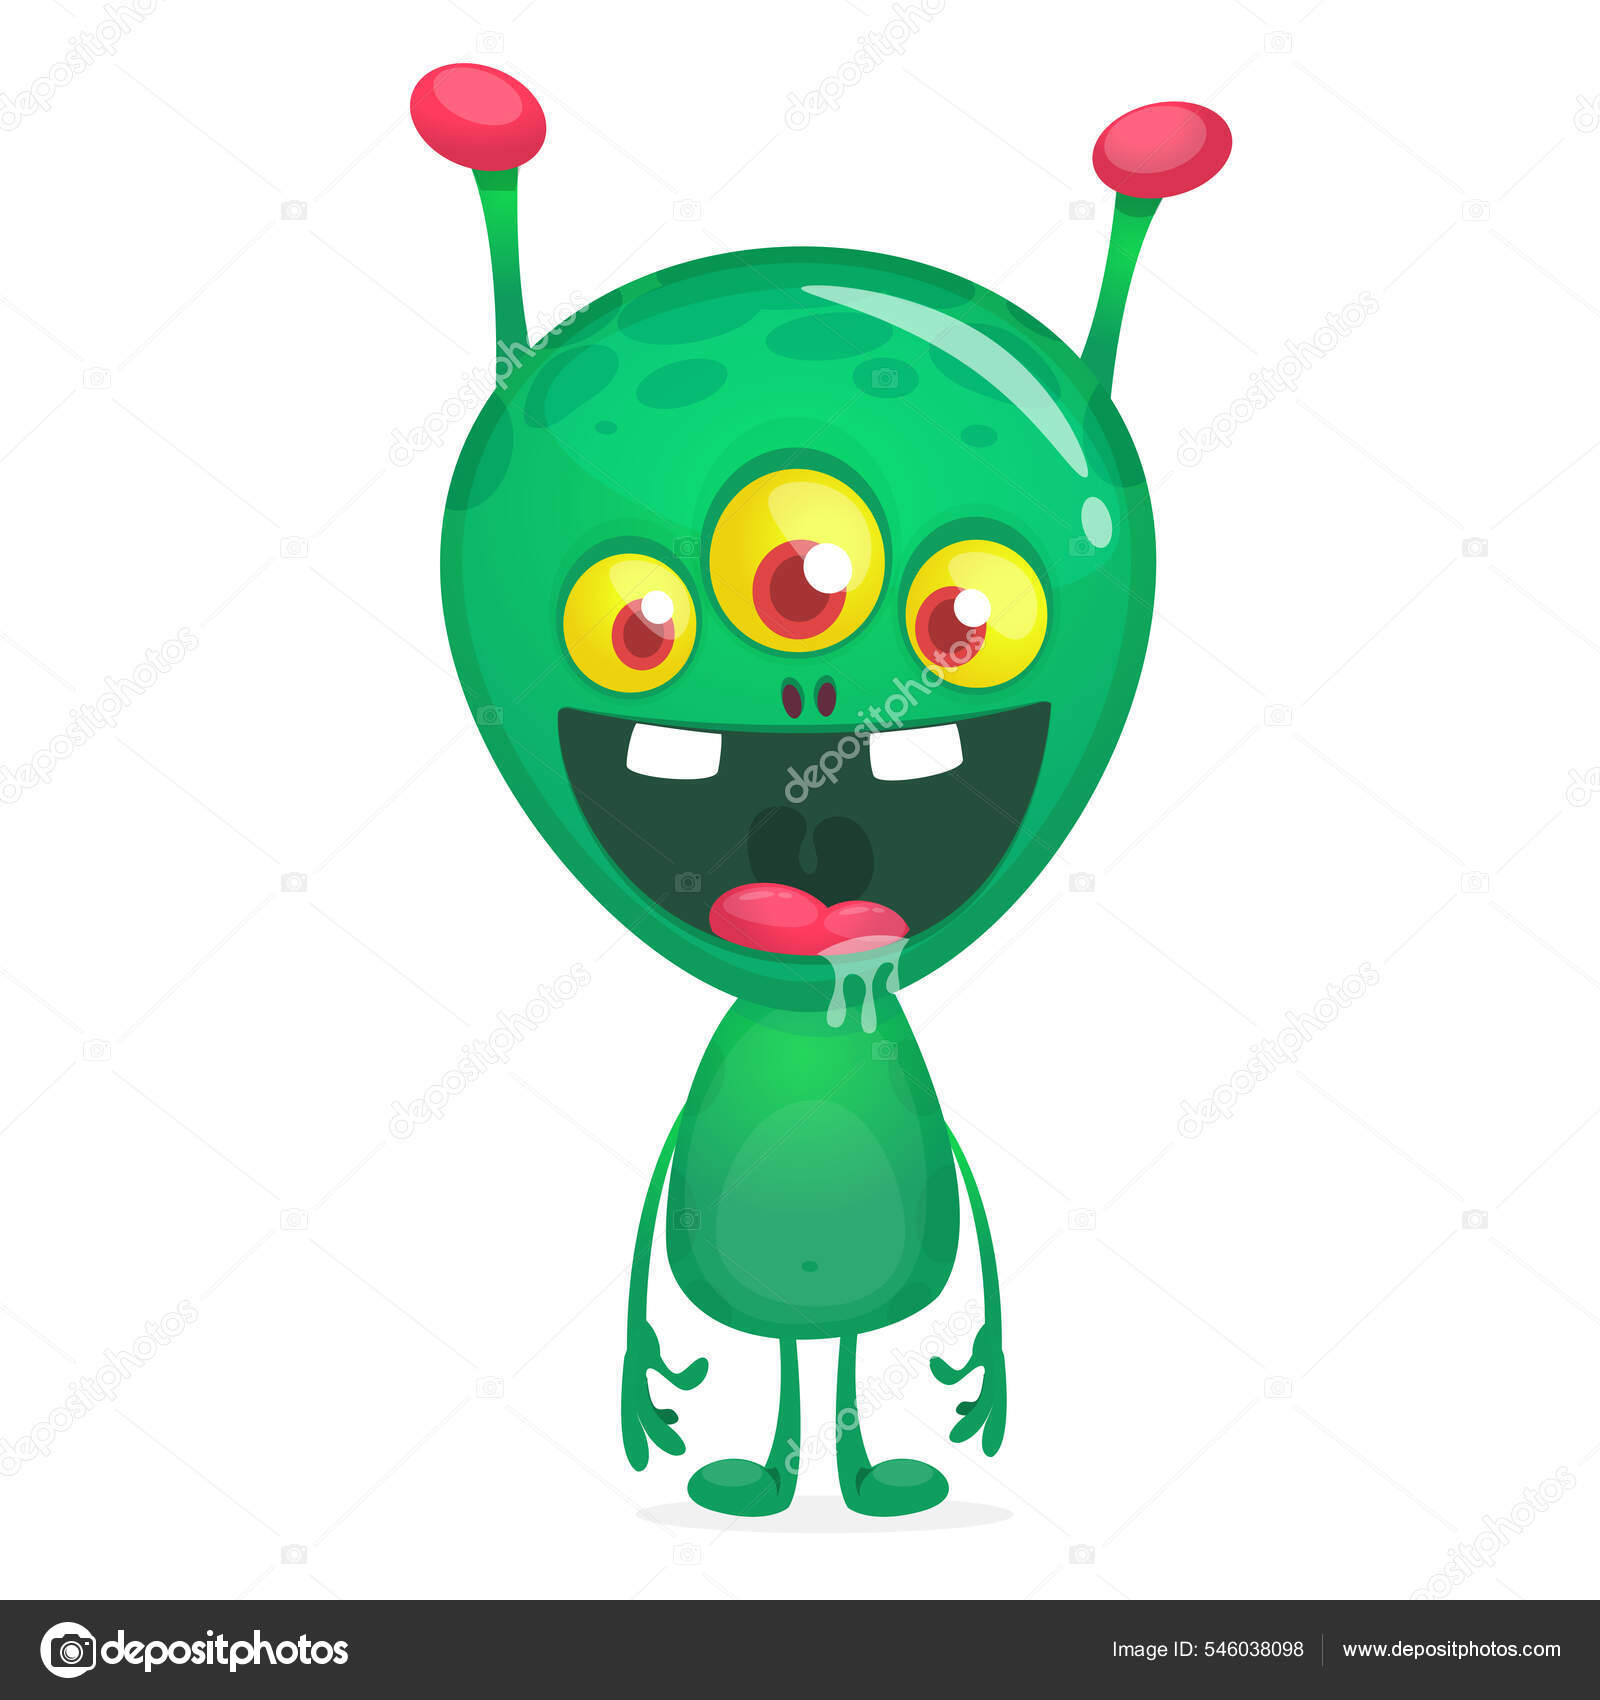 Desenho De Personagem De Desenho Animado Alienígena Verde. Amigo Do Espaço  Ilustração do Vetor - Ilustração de gato, verde: 214471987